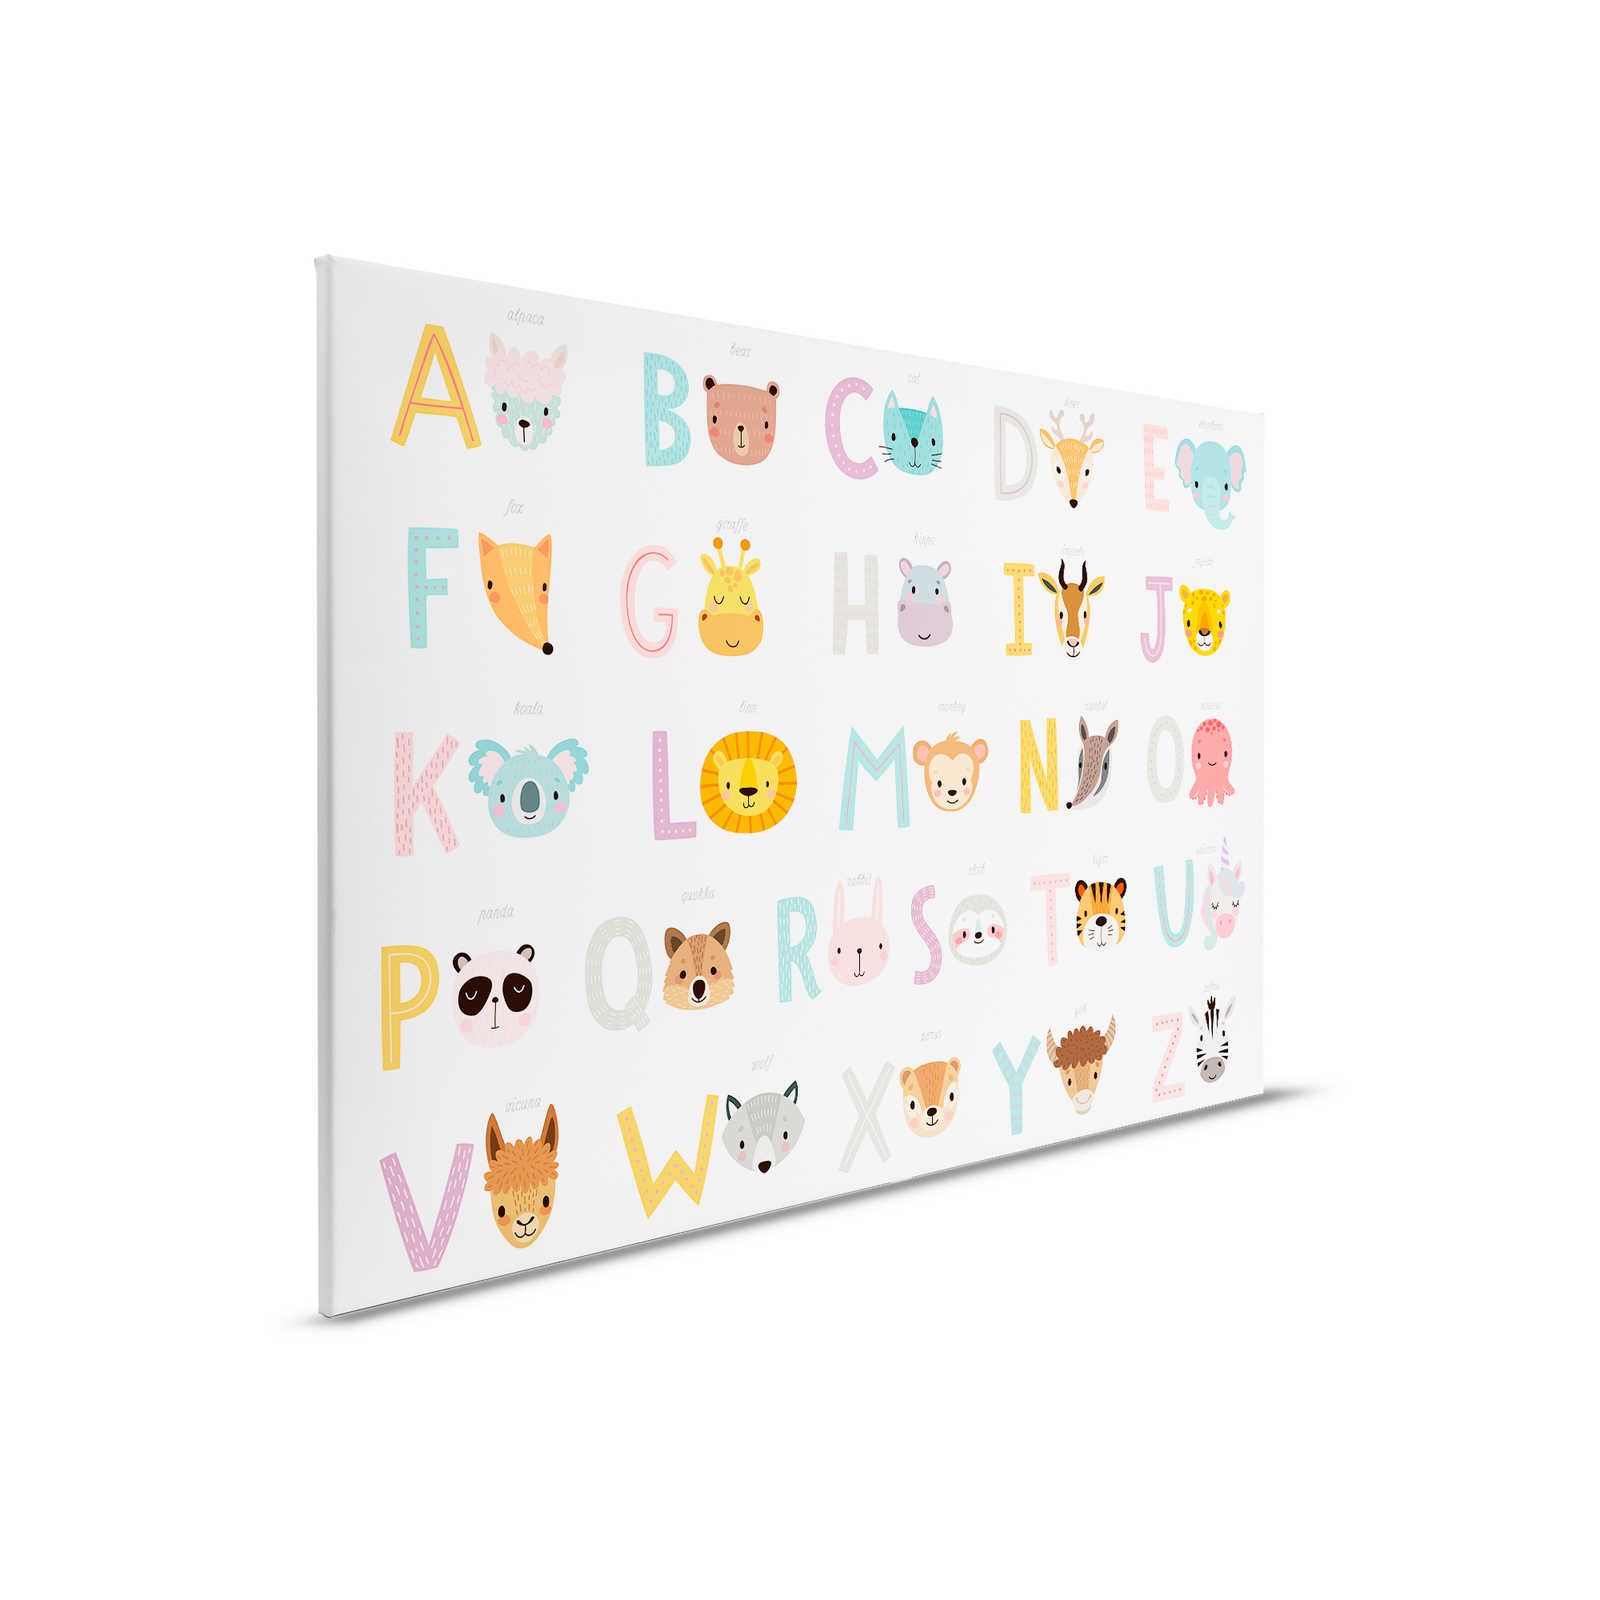         Leinwand ABC mit Tieren und Tiernamen – 90 cm x 60 cm
    